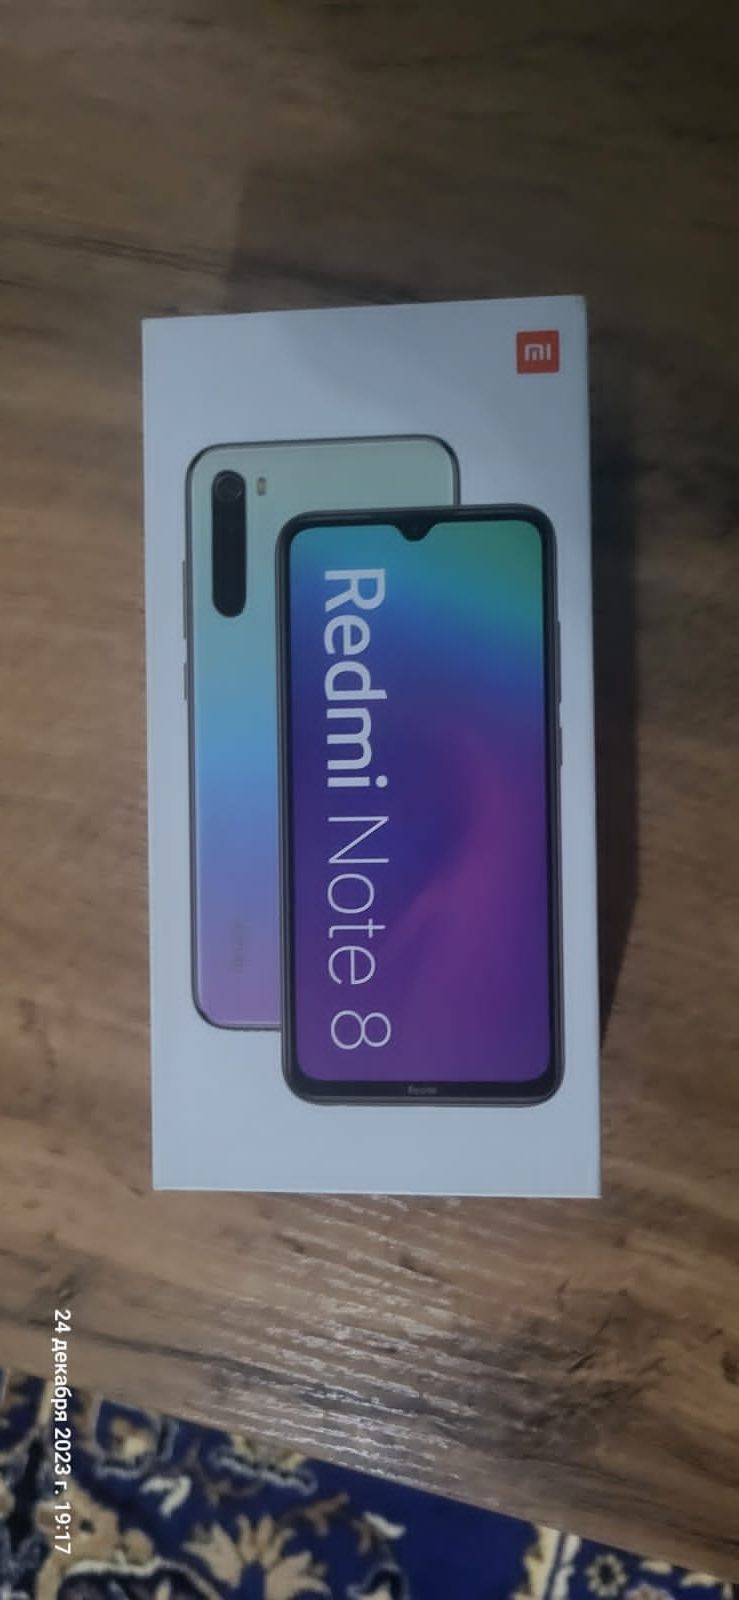 Xiaomi redmi note 8 торг уместен